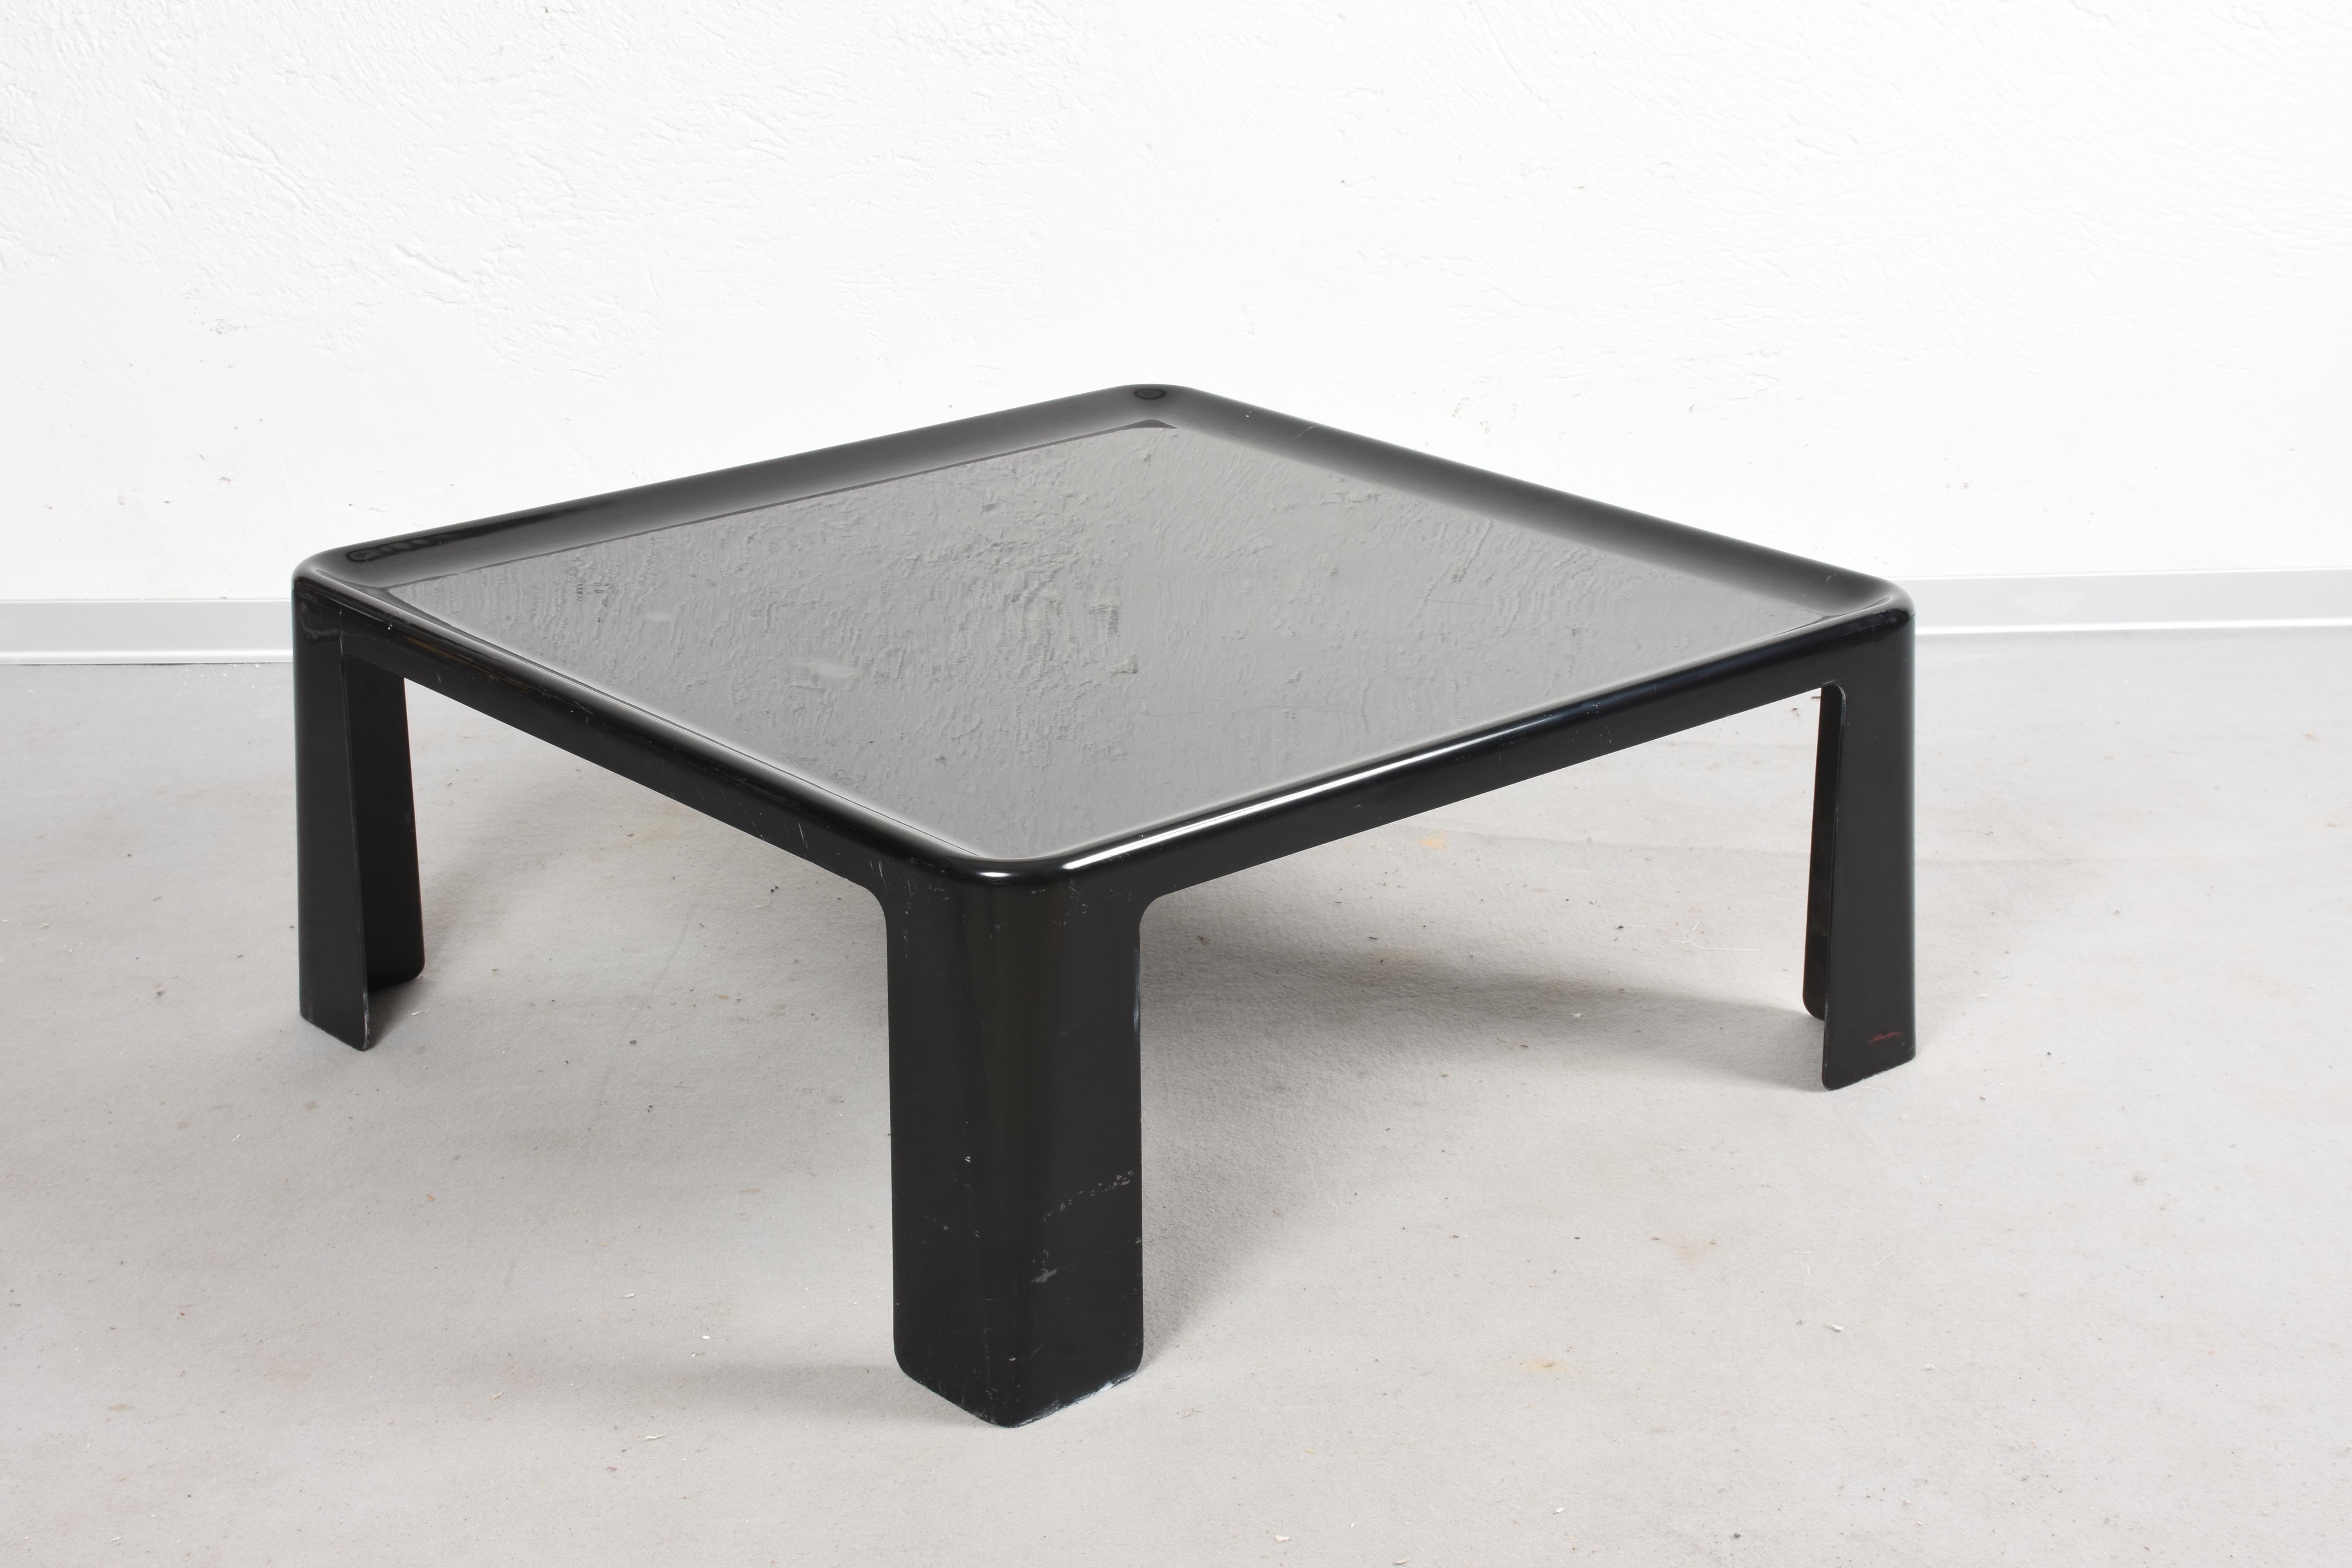 Dieser Beistelltisch oder Couchtisch ist aus Fiberglas (Fiberlite) in Schwarz gefertigt. Er ist quadratisch und hat eine eingedrückte Tischplatte. Er wurde in den 1960er Jahren von Mario Bellini für C&B Italia entworfen.
Dieser Tisch ist das große